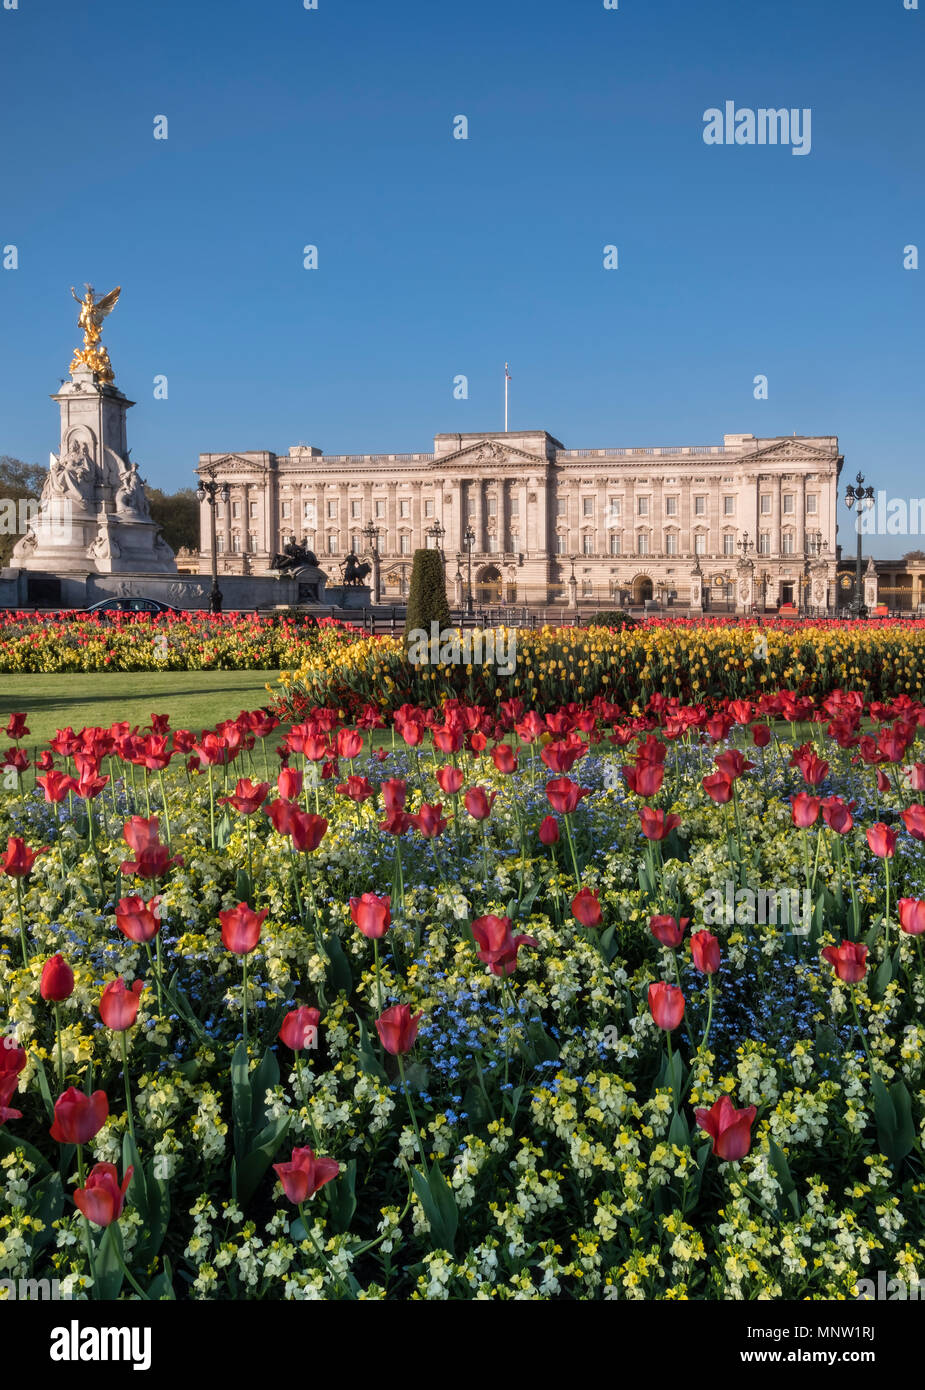 Buckingham Palace in spring, London, England, UK Stock Photo